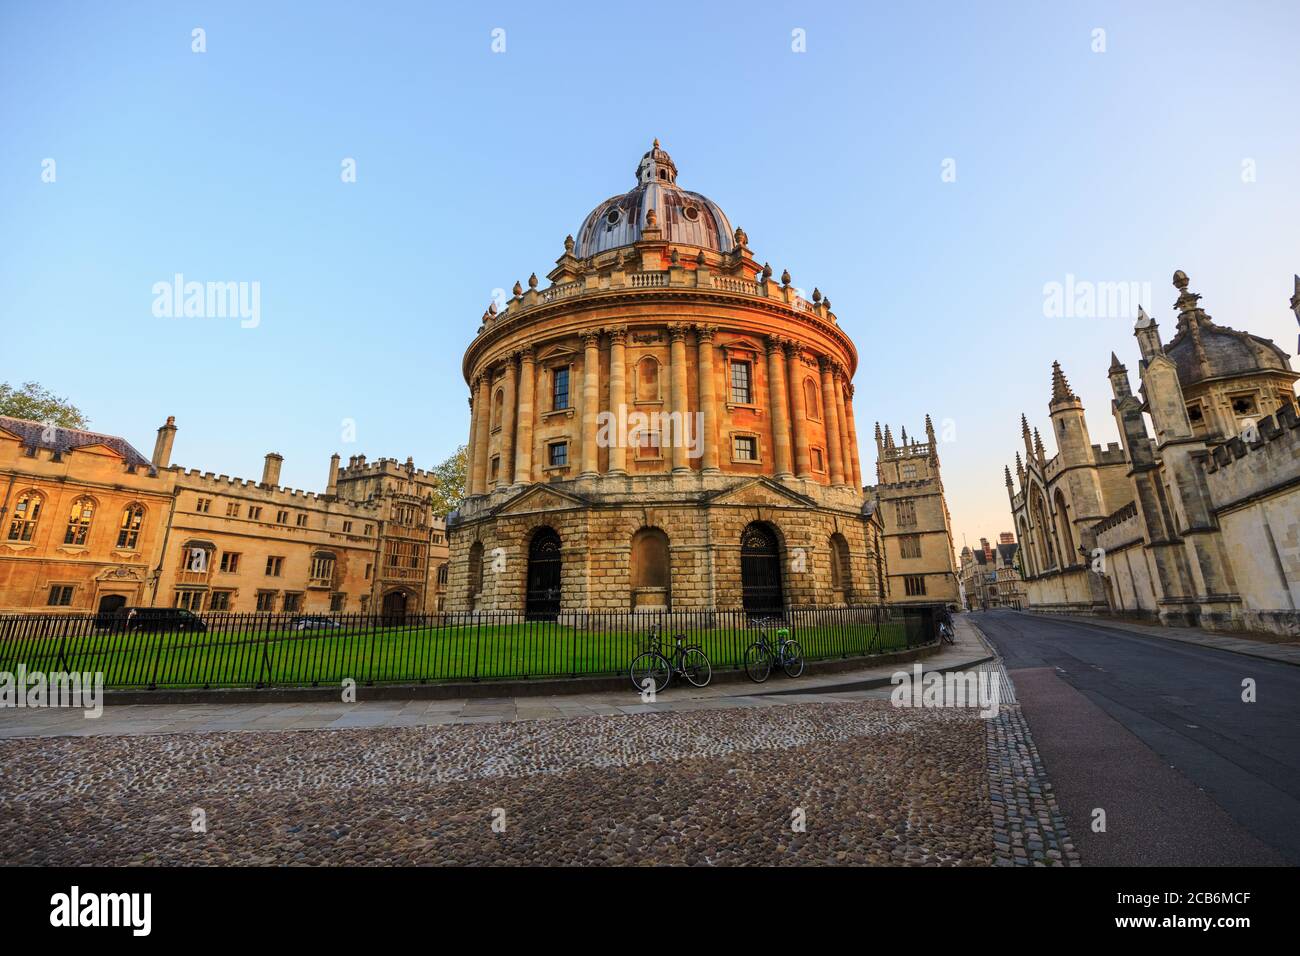 Die Radcliffe Kamera in Oxford bei Sonnenaufgang ohne Leute herum, früh am Morgen an einem klaren Tag mit blauem Himmel. Oxford, England, Großbritannien. Stockfoto